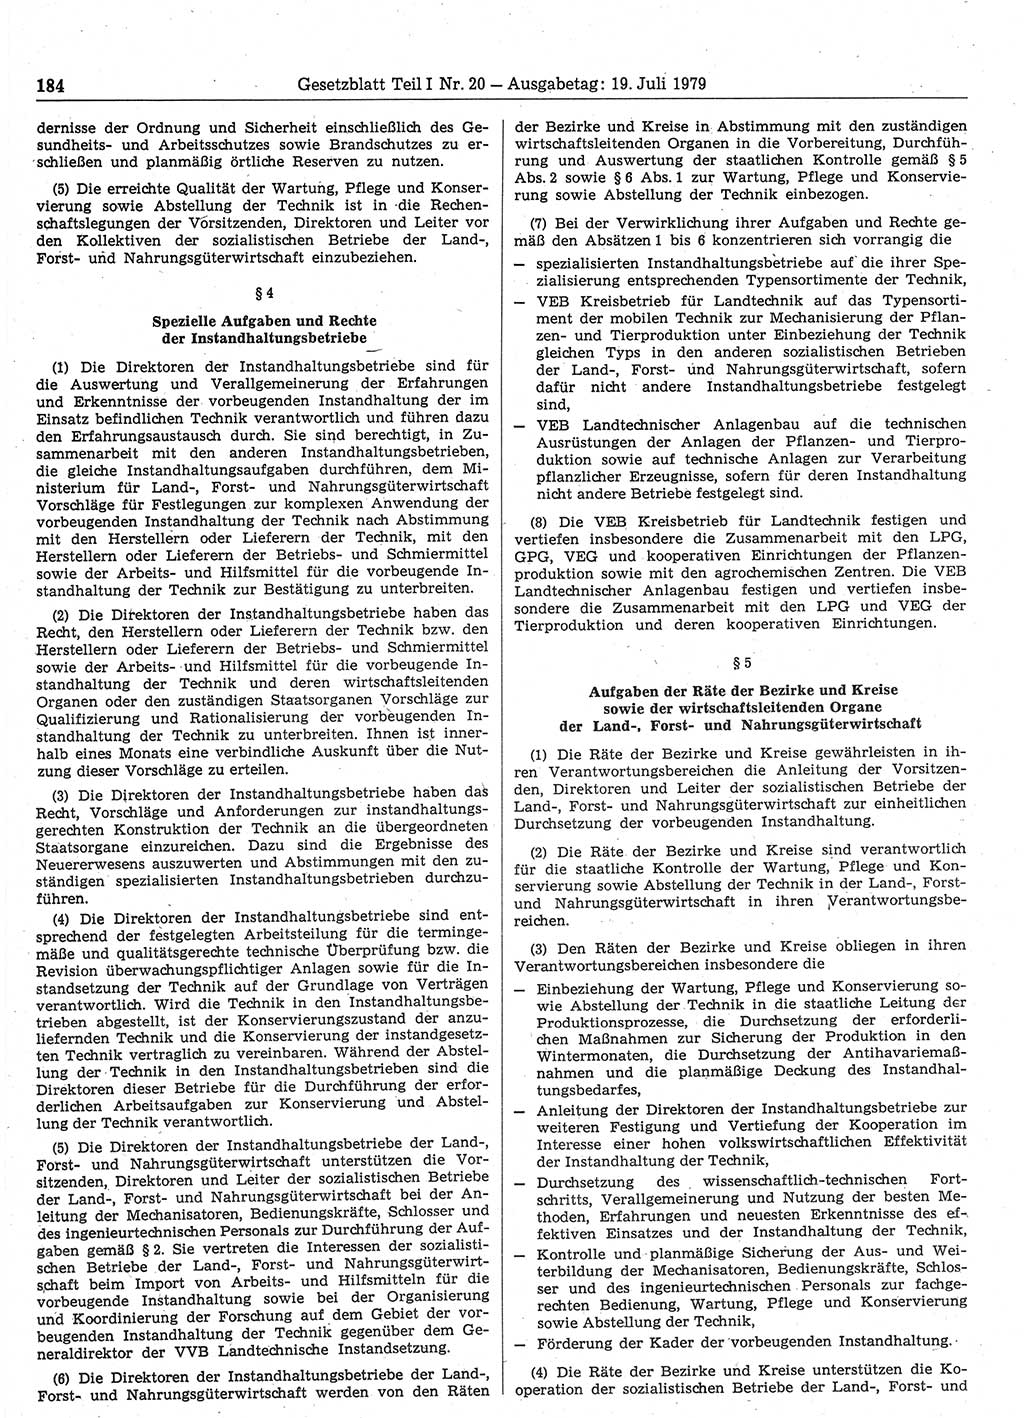 Gesetzblatt (GBl.) der Deutschen Demokratischen Republik (DDR) Teil Ⅰ 1979, Seite 184 (GBl. DDR Ⅰ 1979, S. 184)